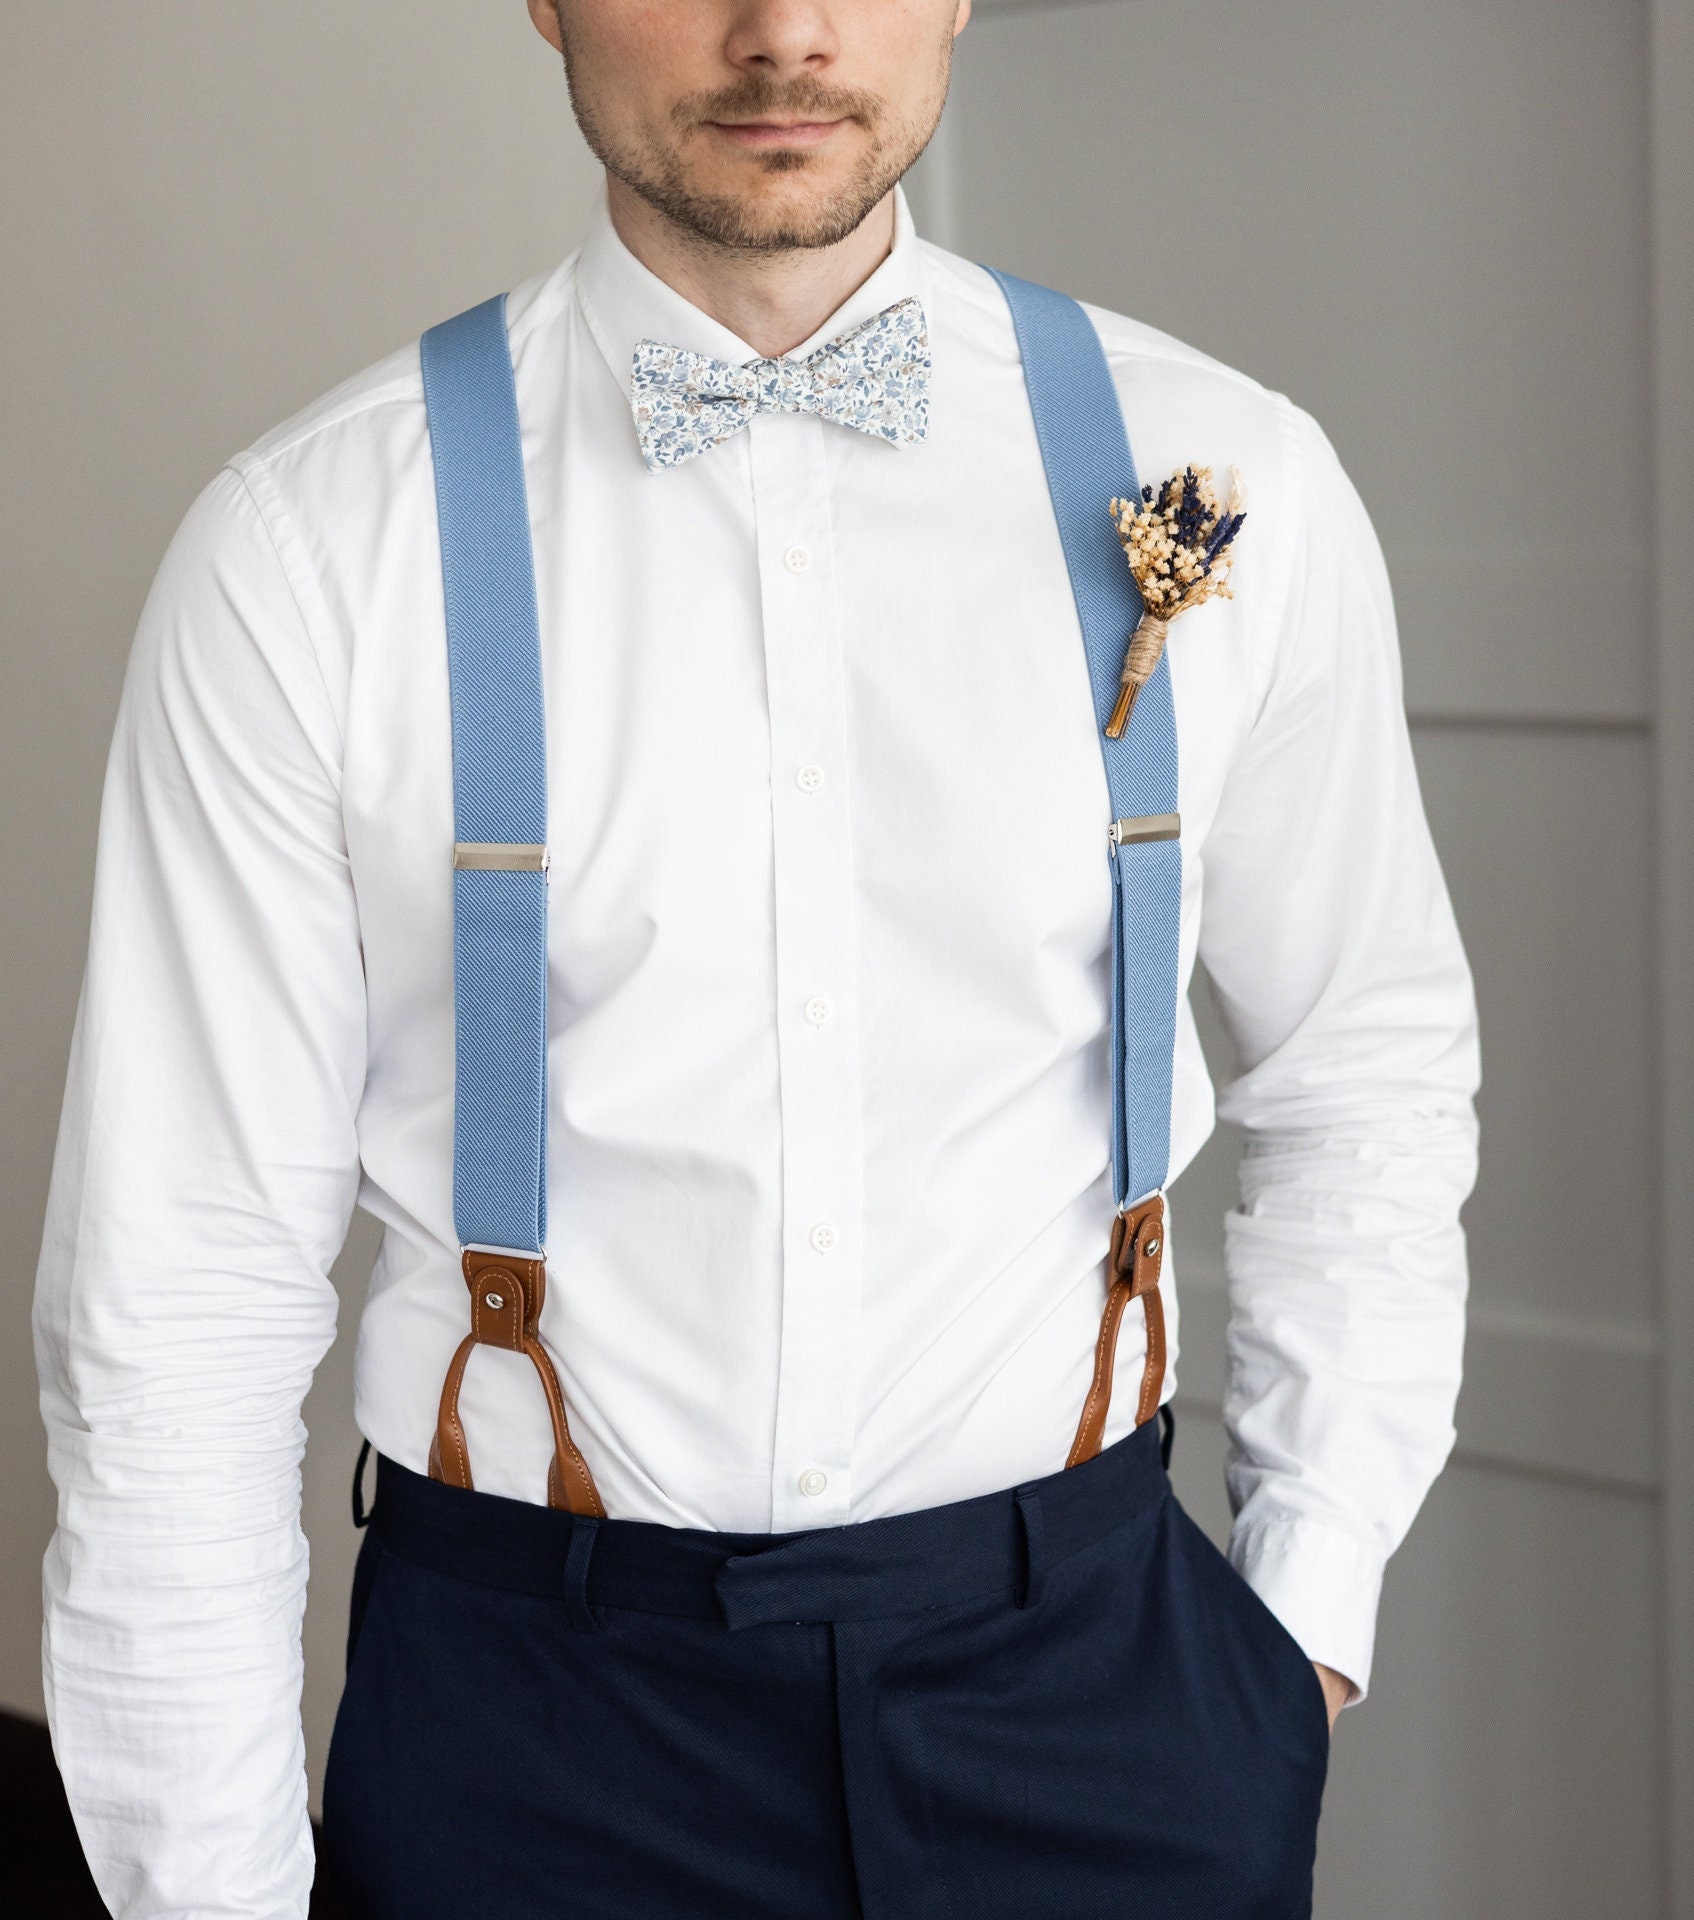 bubibubities Beige Suspenders for Men, Button Suspenders, Wedding Suspenders for Groom Groomsmen, Elastic Suspenders, Clip Suspenders